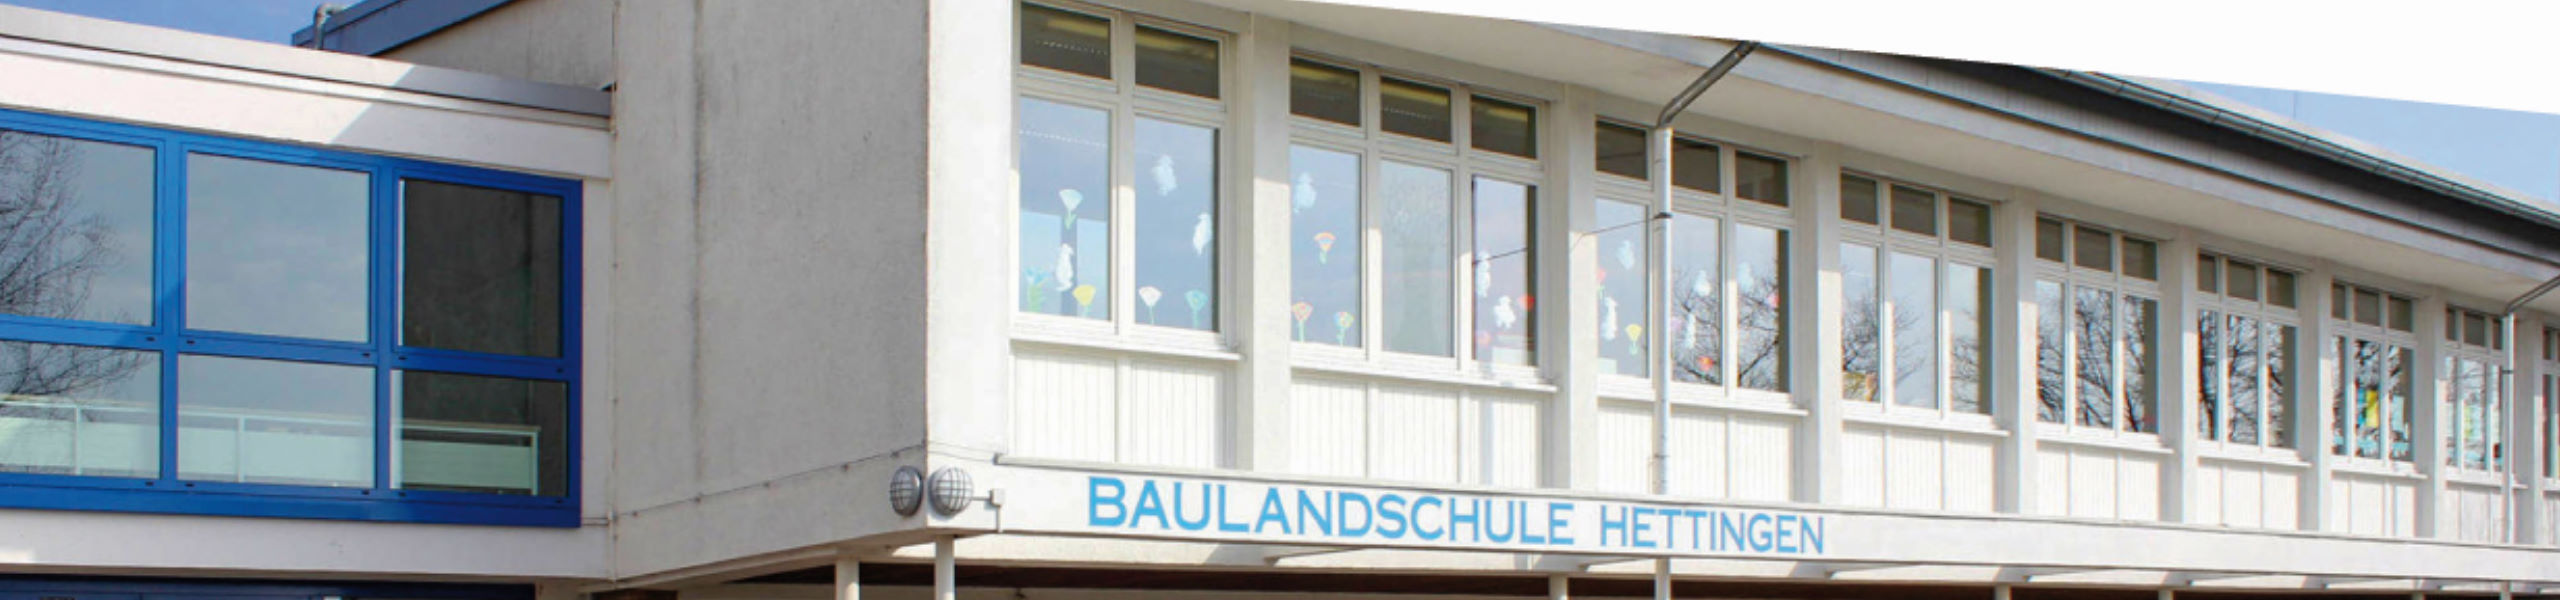 Baulandschule Hettingen - Verkehrssituation vor der Schule und auf dem Schulweg